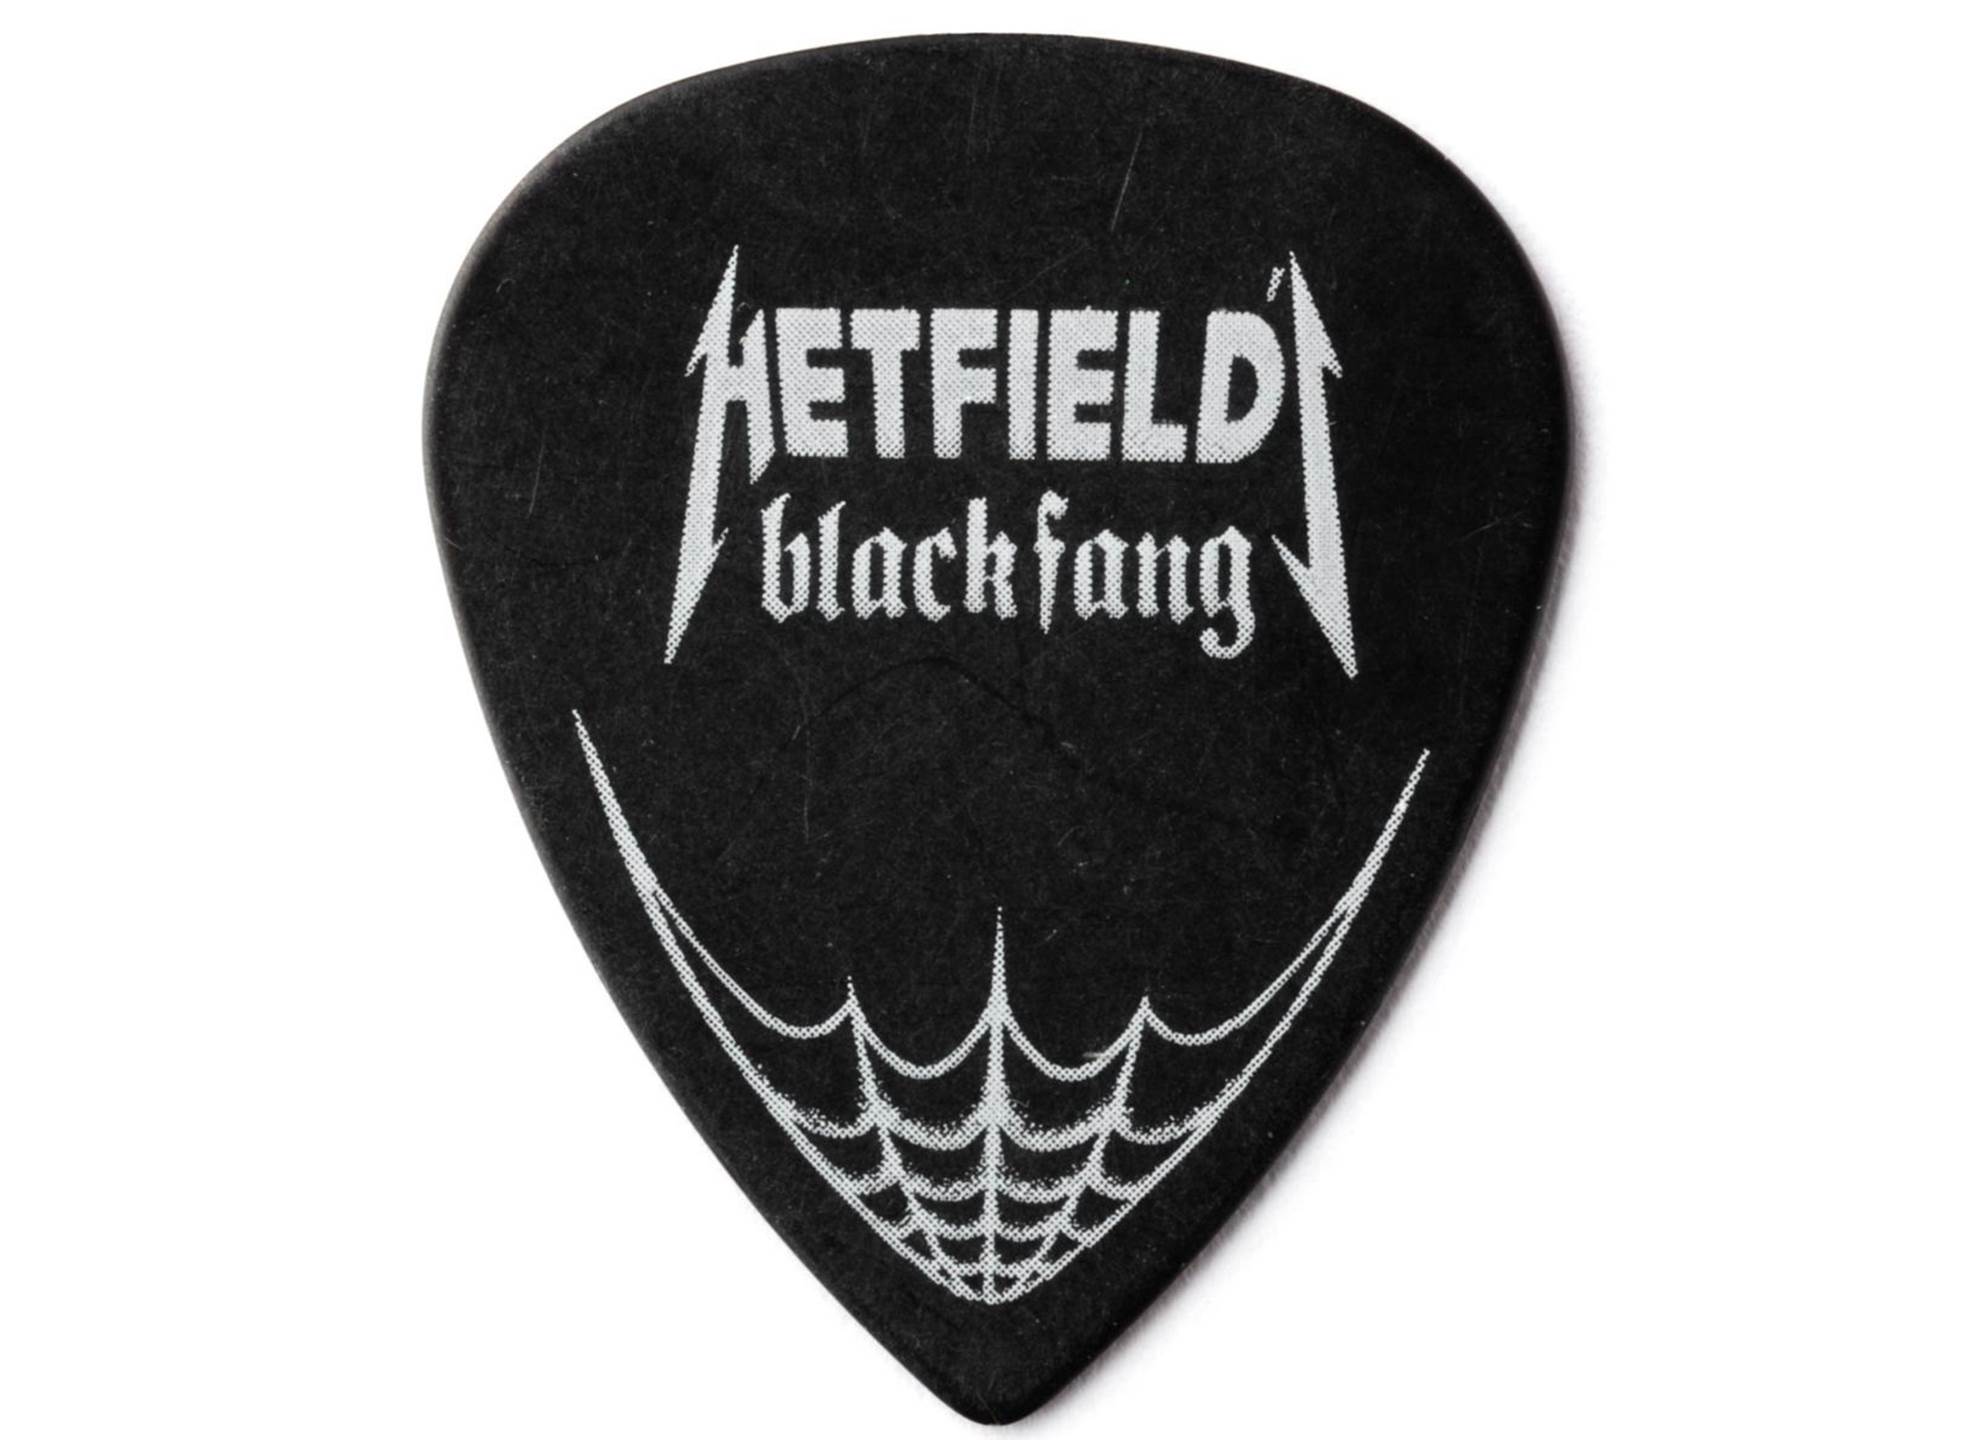 Hetfield Black Fang 0.73 6-pack